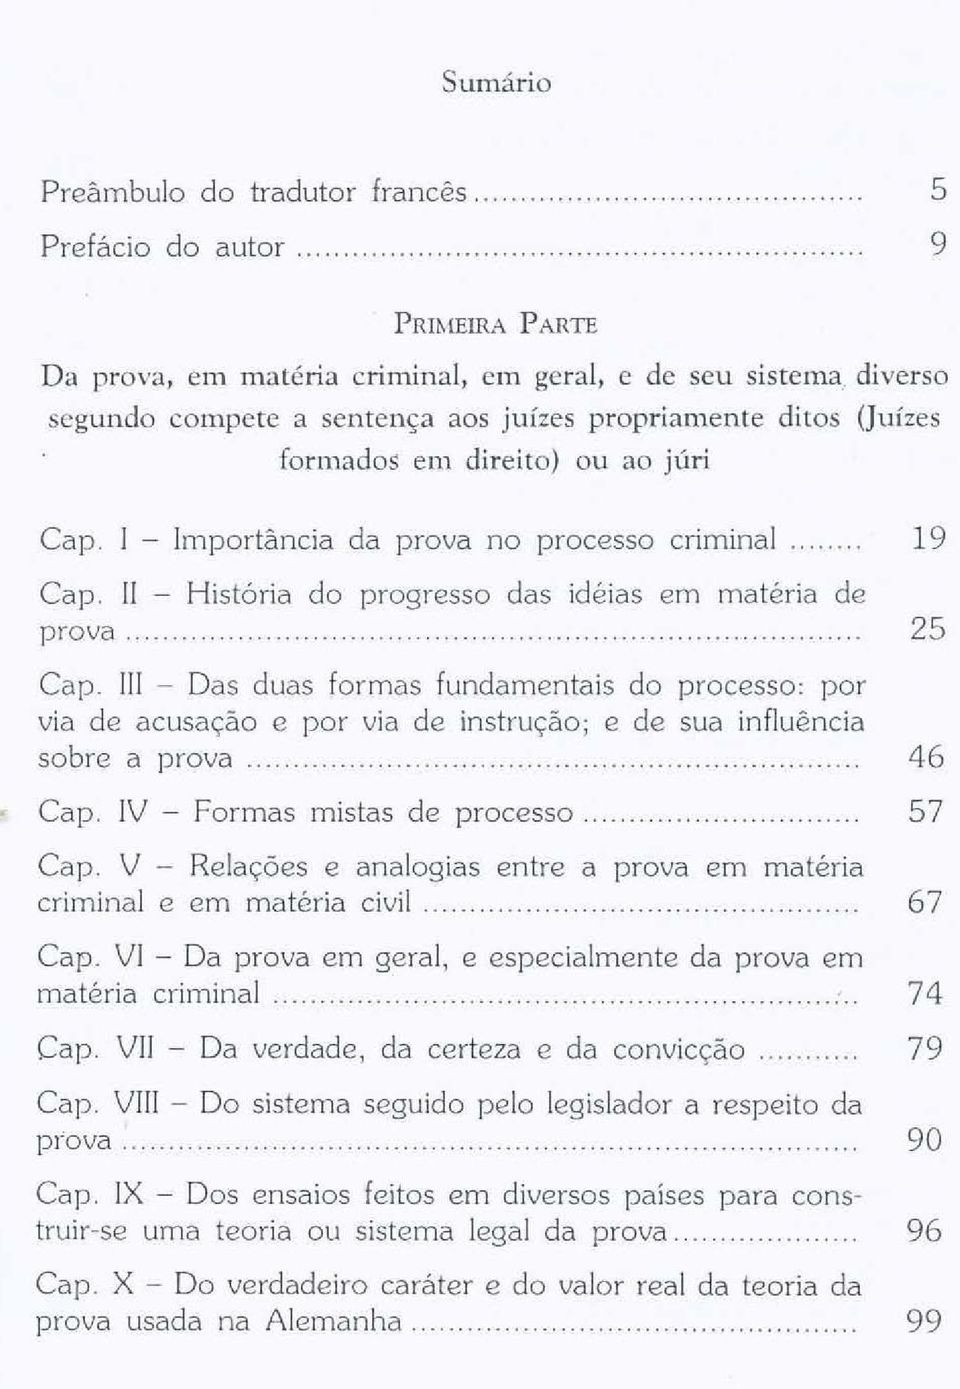 Importância da prova no processo criminal 19 Capo II - História do progresso das idéias em matéria de prova.